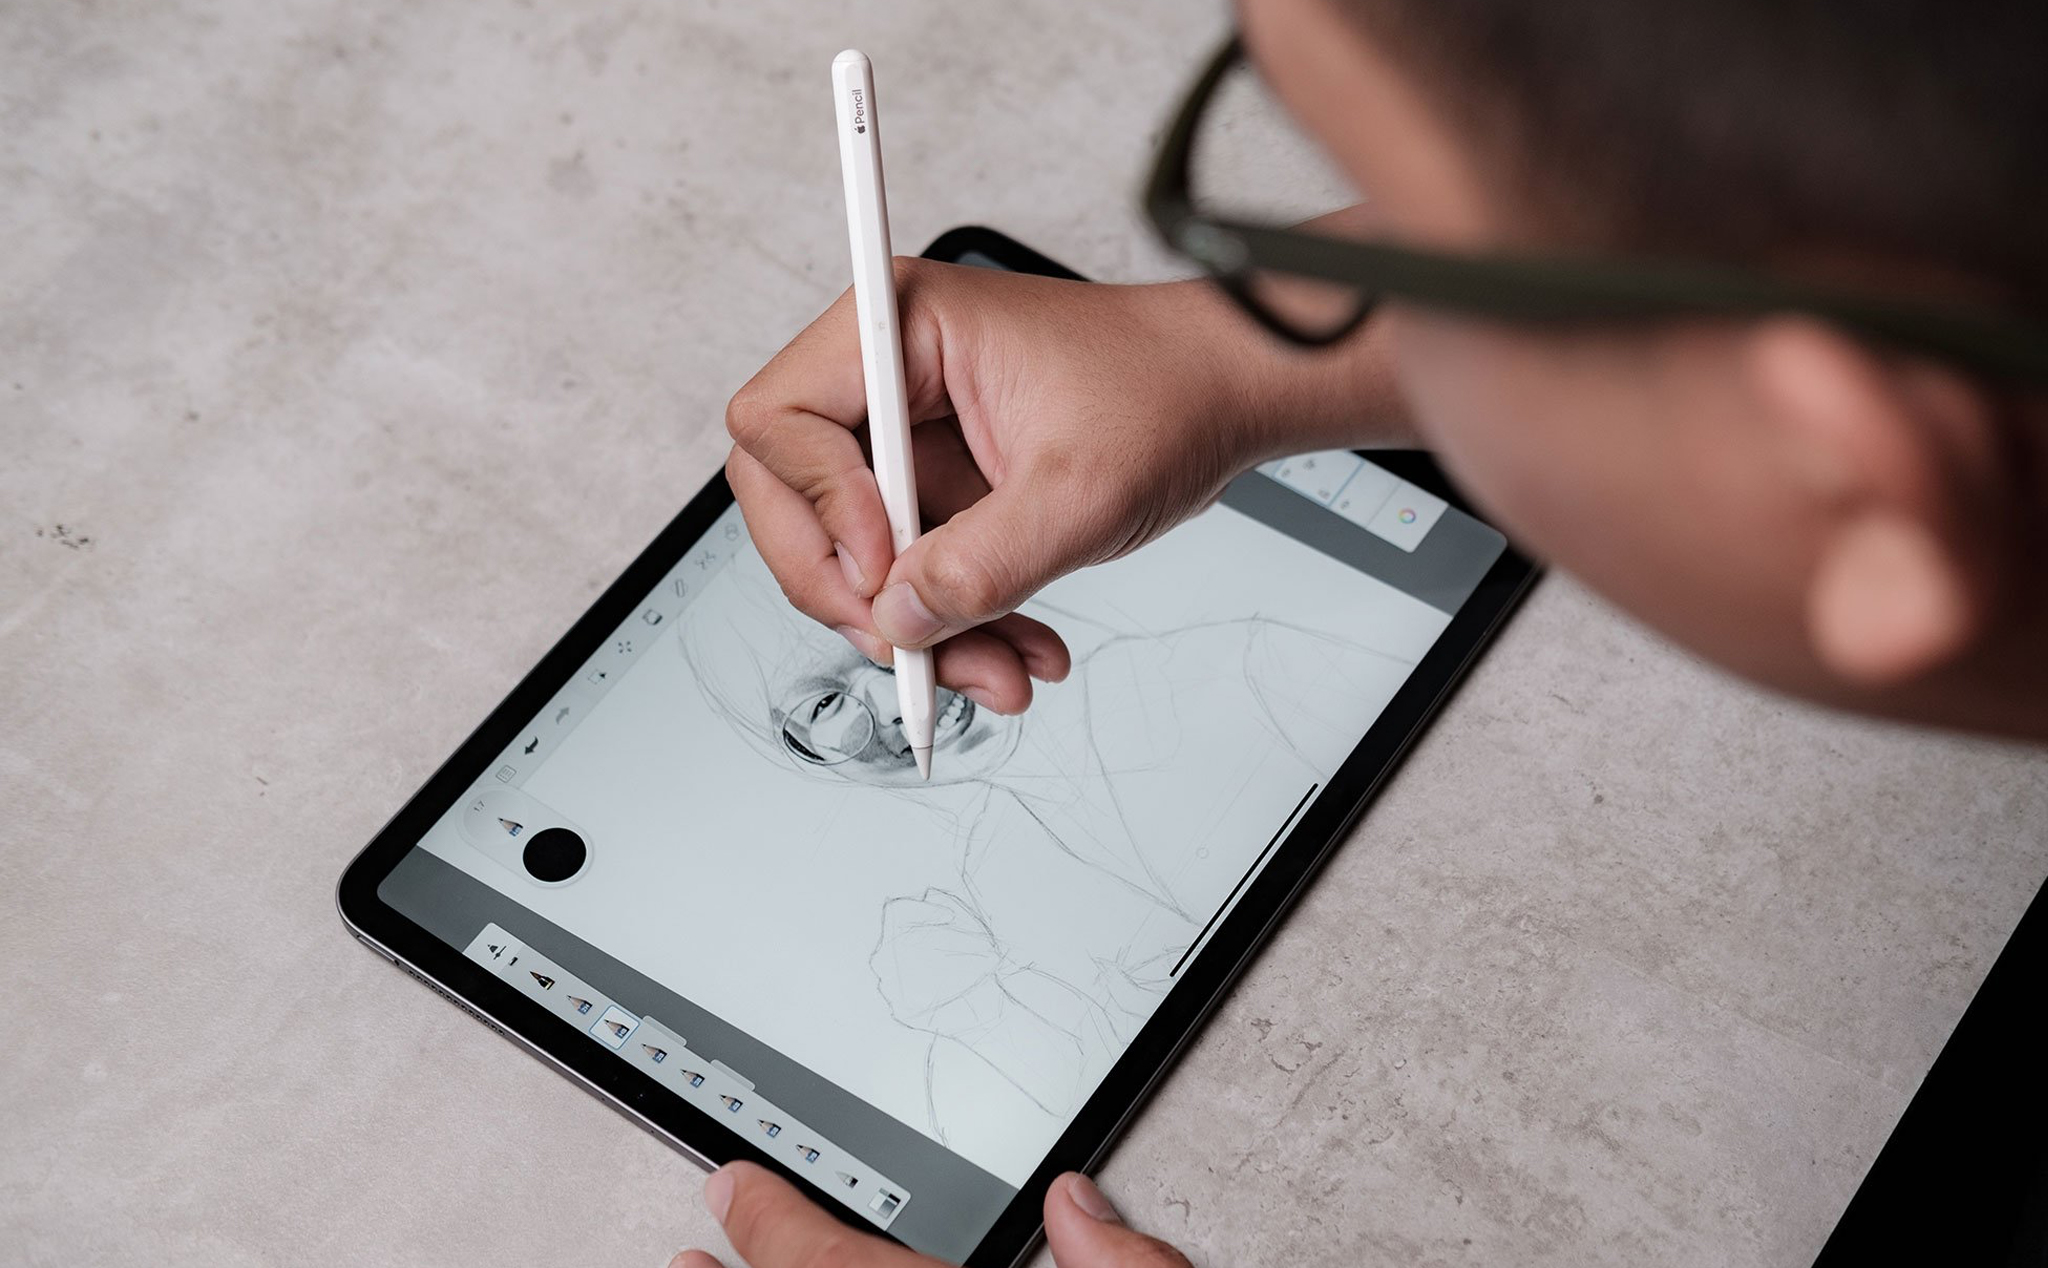 Nếu bạn đam mê vẽ tranh, thì Apple Pencil là công cụ không thể thiếu cho iPad. Thiết kế như bút chì, độ nhạy cảm cao, cho phép bạn vẽ chi tiết và chân thực. Bước vào thế giới nghệ thuật với Apple Pencil trên iPad.